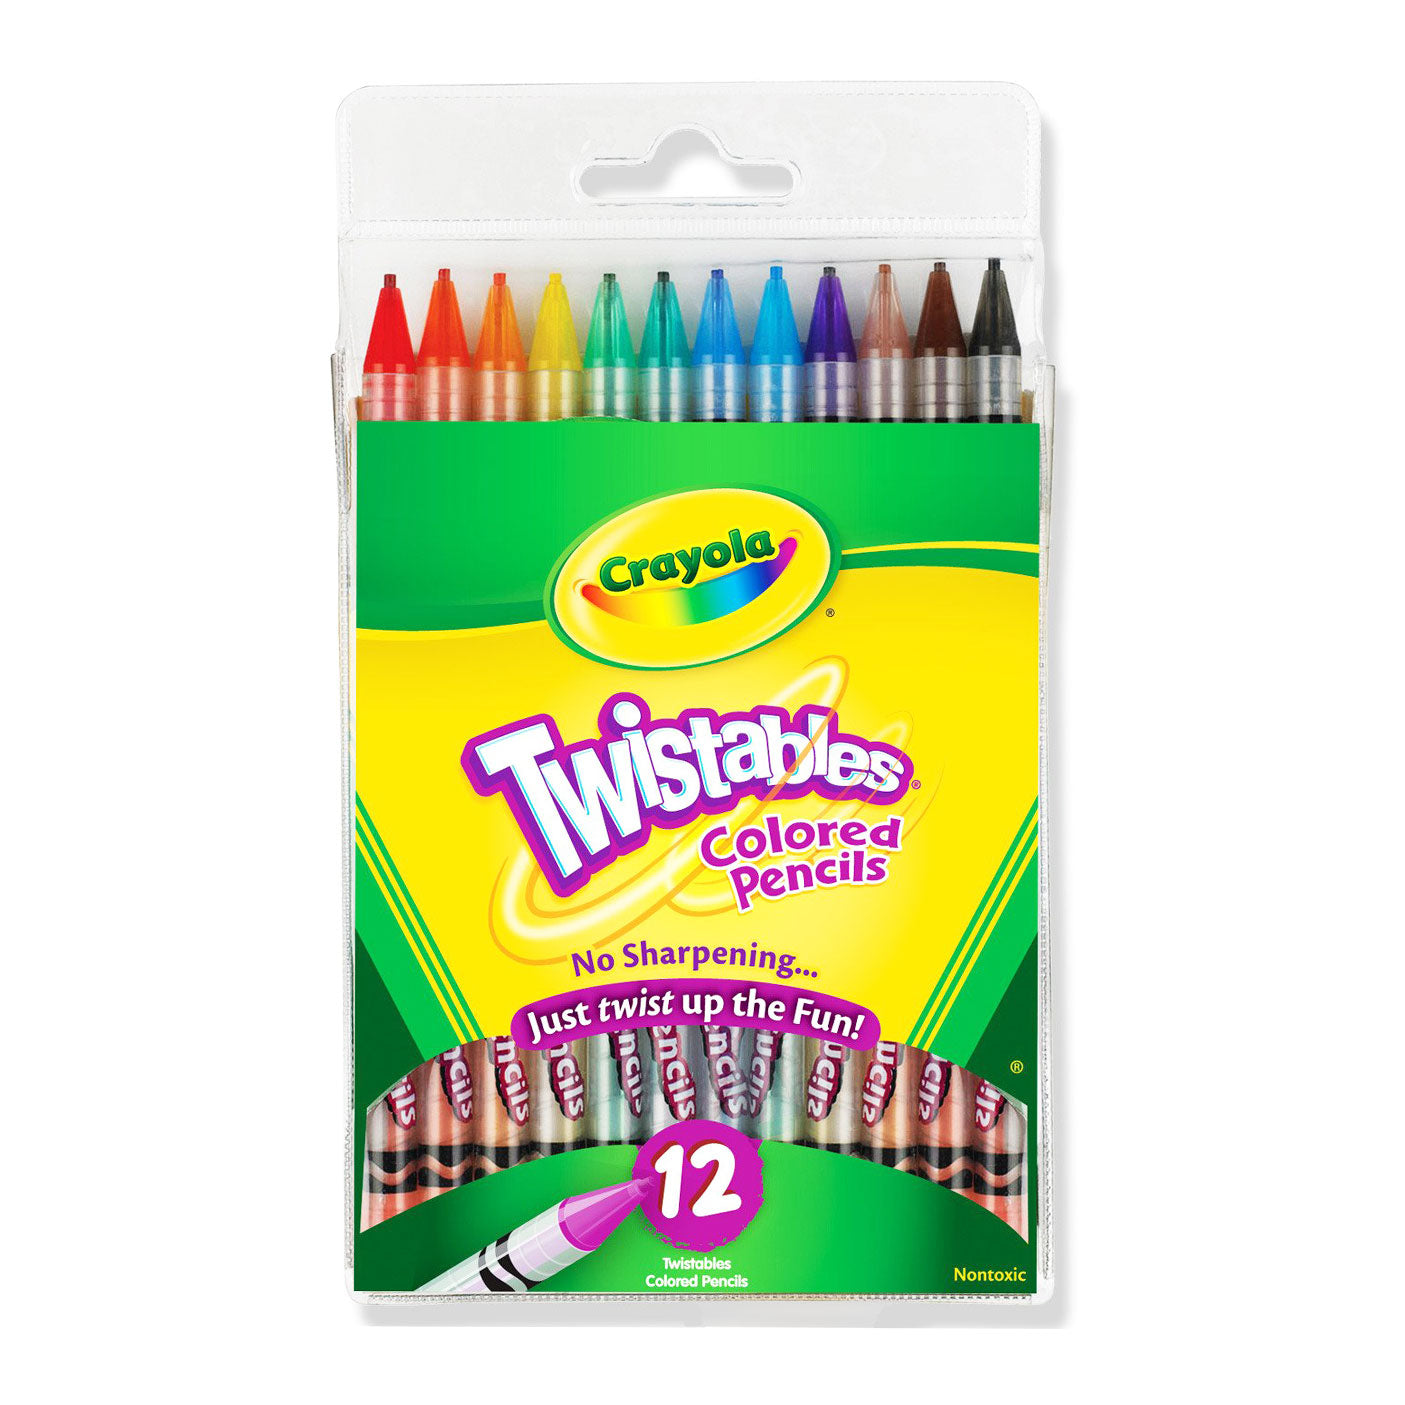 Crayola Twistables Colored Pencils 30 per Box, 2 Boxes | BIN687409-2